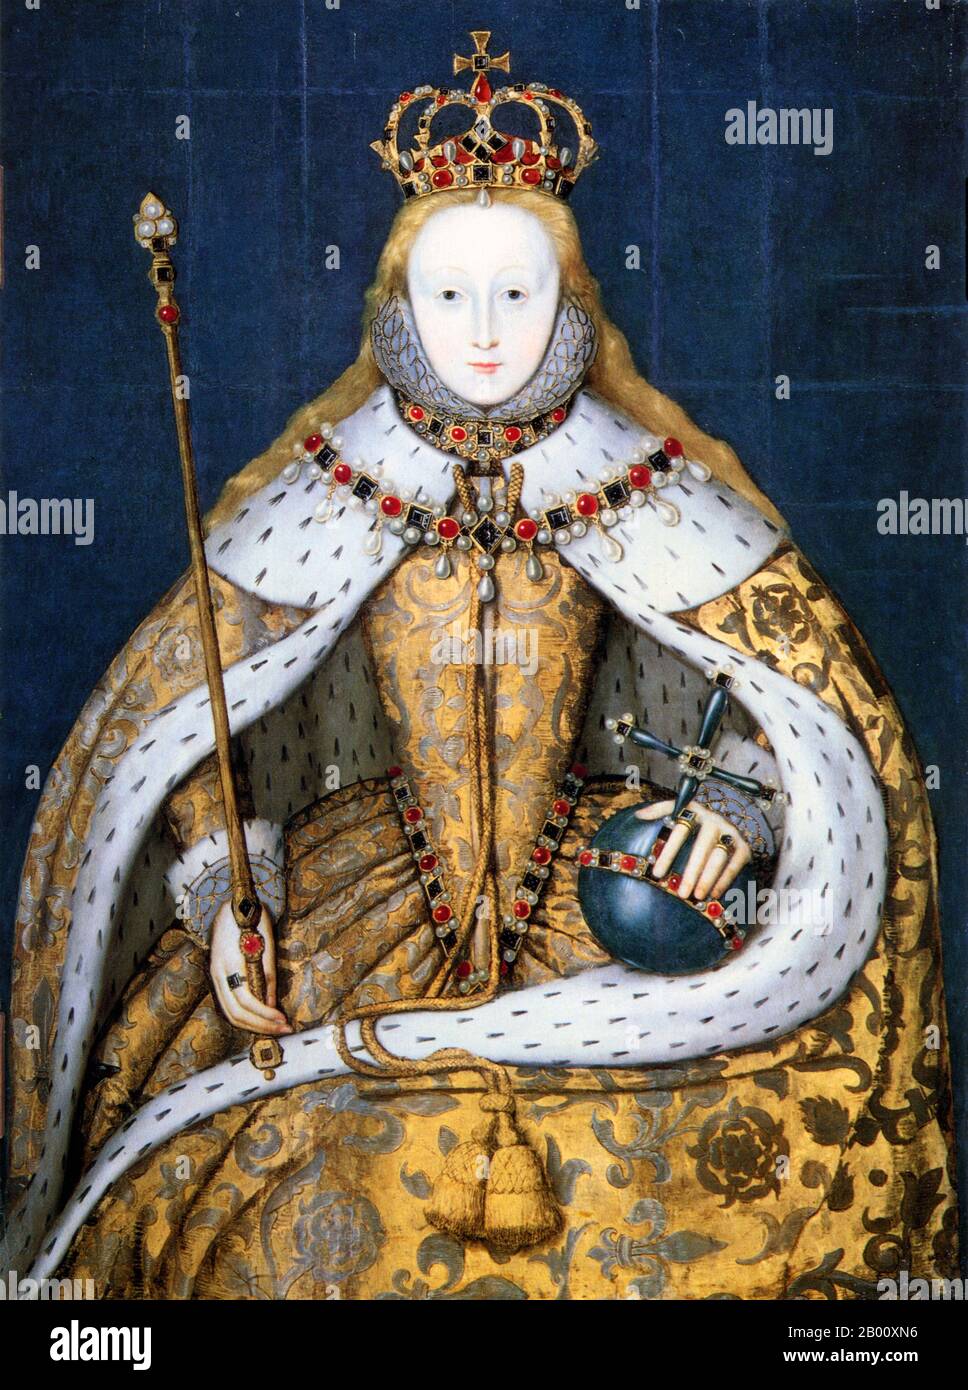 Angleterre: 'La reine Elizabeth I dans les robes de Coronation'. Huile sur le tableau par un artiste inconnu c. 1600. Elizabeth I (7 septembre 1533 – 24 mars 1603) a été Reine Regnant d'Angleterre et Reine Regnant d'Irlande du 17 novembre 1558 jusqu'à sa mort. Parfois appelée la Reine de la Vierge, Gloriana, ou la bonne Reine Bess, Elizabeth était le cinquième et dernier monarque de la dynastie Tudor. La politique étrangère d'Elizabeth I à l'égard de l'Asie, de l'Afrique et de l'Amérique latine a démontré une nouvelle compréhension du rôle de l'Angleterre en tant que puissance maritime et protestante dans une économie de plus en plus mondiale. Banque D'Images